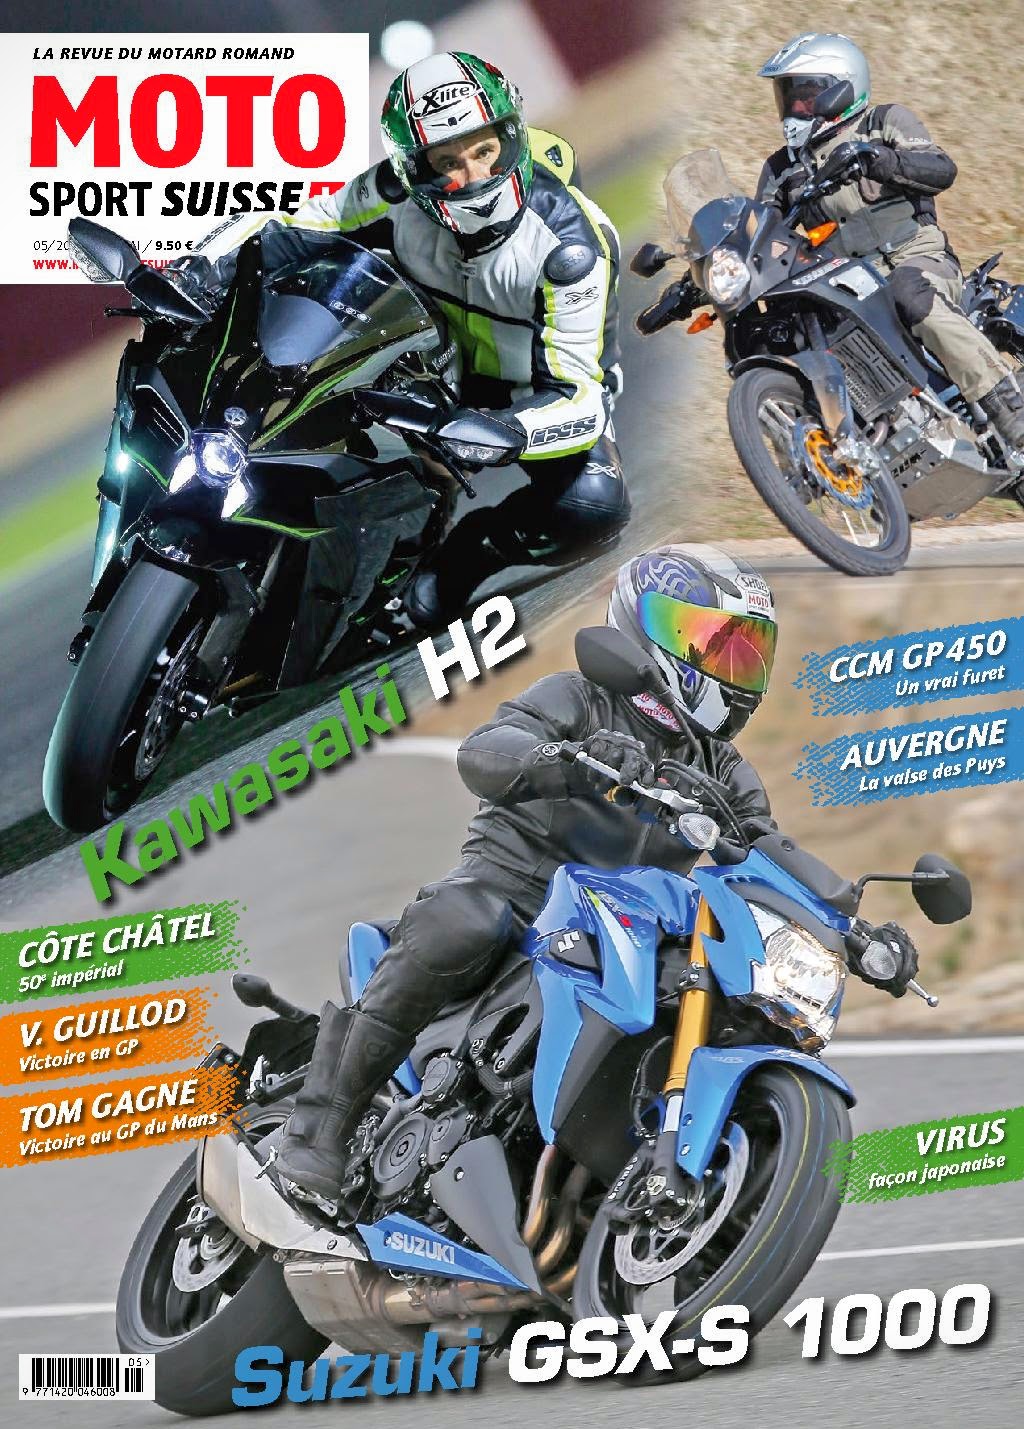 Article au sujet de Greasemonkees avec des motos de JV Performances paru dans l'édition du mois de mai 2015 du magazine Moto Sport Suisse